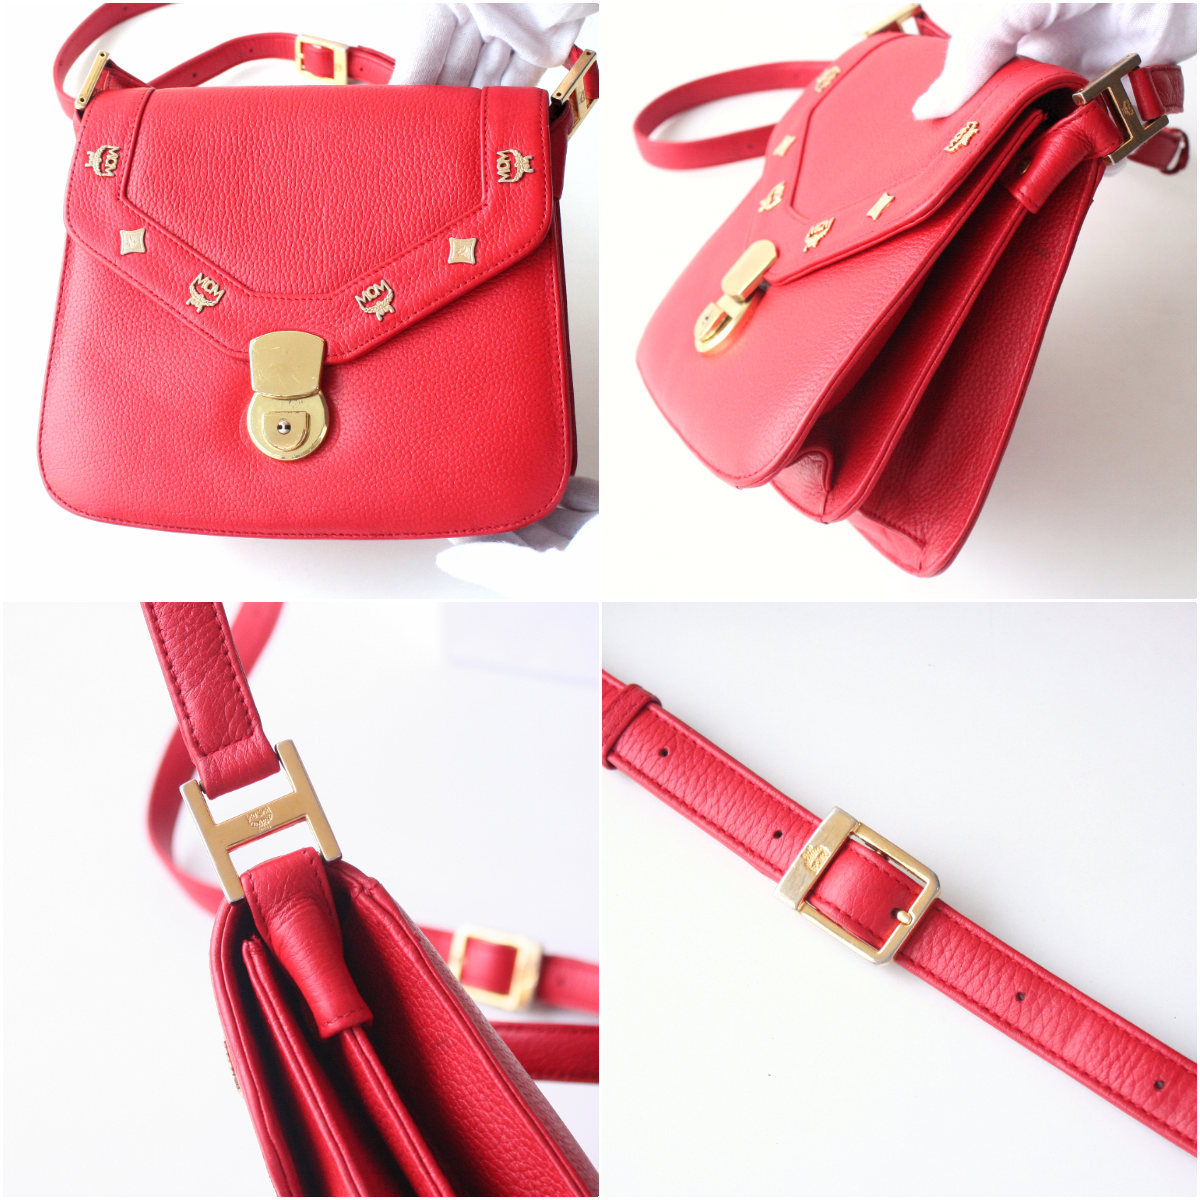 MCM Red Leather Shoulder Bag Authentic Vintage purse - Handbags & Purses